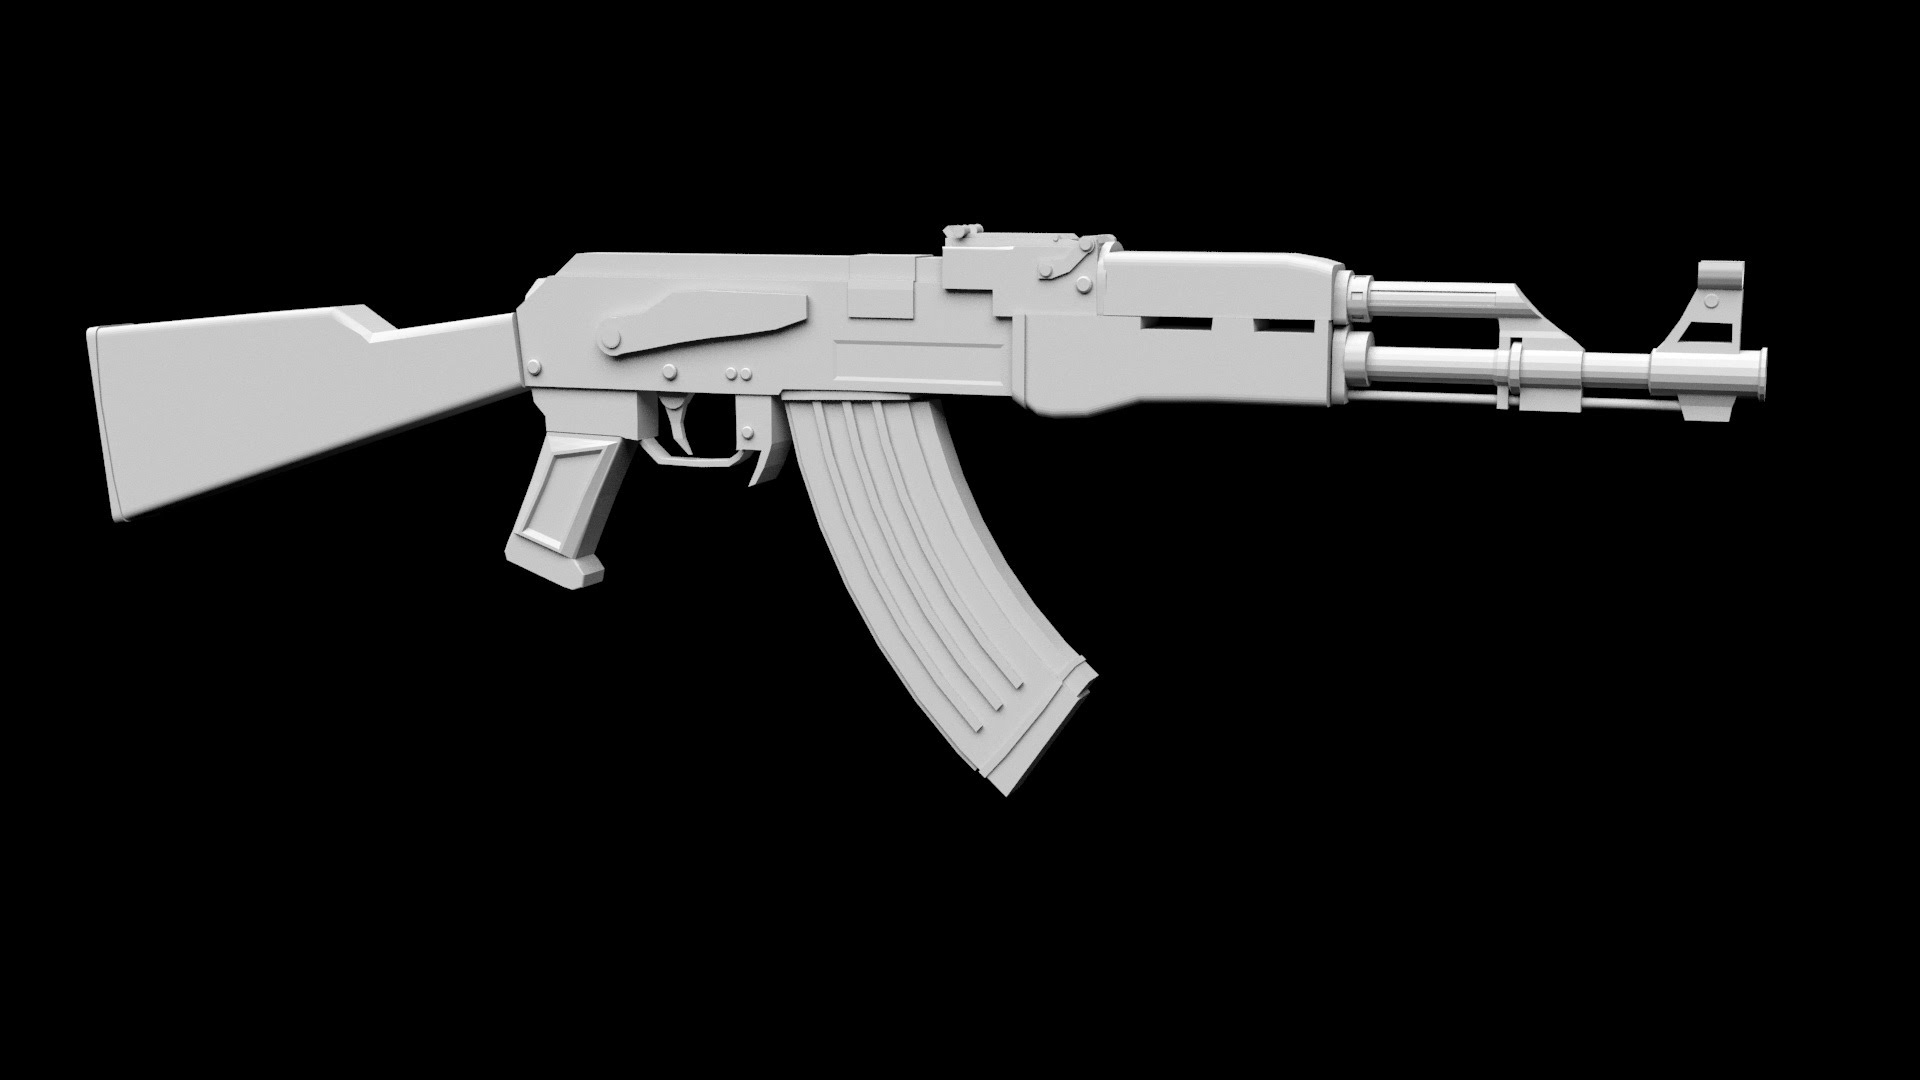 3d max сложное моделирование,3d max основы моделирования,урок 3d max,3d max быстрое моделирование, Моделирование AK-47 в 3D Max